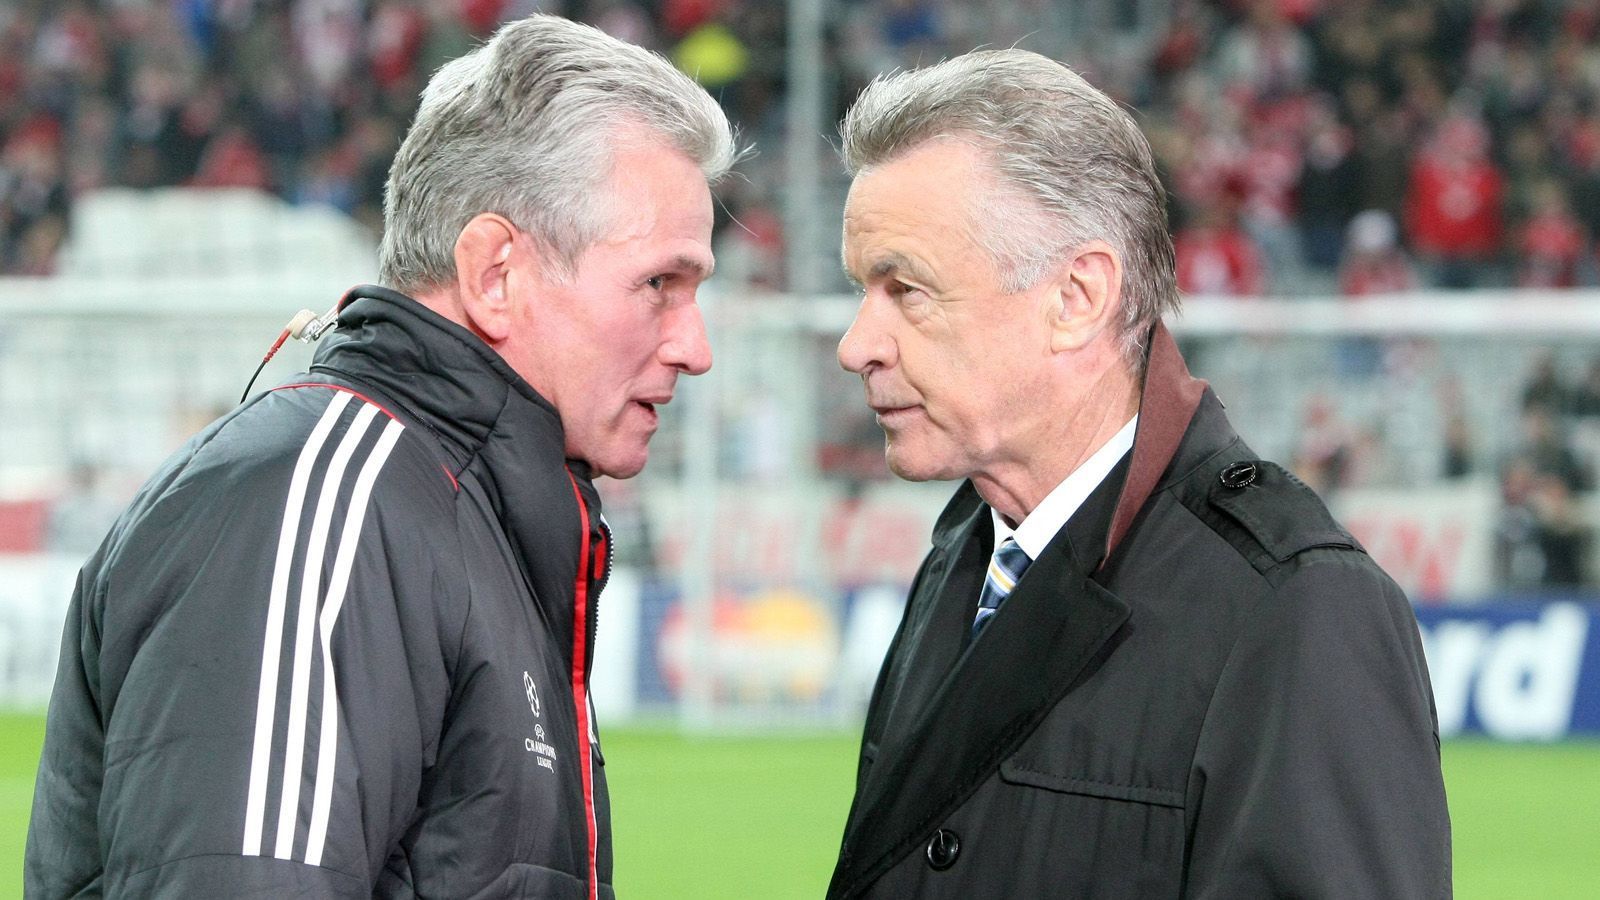 
                <strong>Respektsperson mit väterlicher Verbundenheit  </strong><br>
                Ein Blick auf die Trainer des FC Bayern in den vergangenen Jahren zeigt, dass vor allem zwei Trainer von ähnlichem Typ funktionierten und bis heute größte Hochachtung in der Führungsetage genießen. Die Rede ist von Jupp Heynckes (74) und Ottmar Hitzfeld (70): Beide vereinten als Bayern-Trainer sehr viel von dem, was auch Bayerns neuer Cheftrainer benötigt. Als Respektsperson für Spieler und Verantwortliche holten die beiden Trainer-Legenden so 23 Titel, darunter je einmal die Champions League, an die Isar.
              